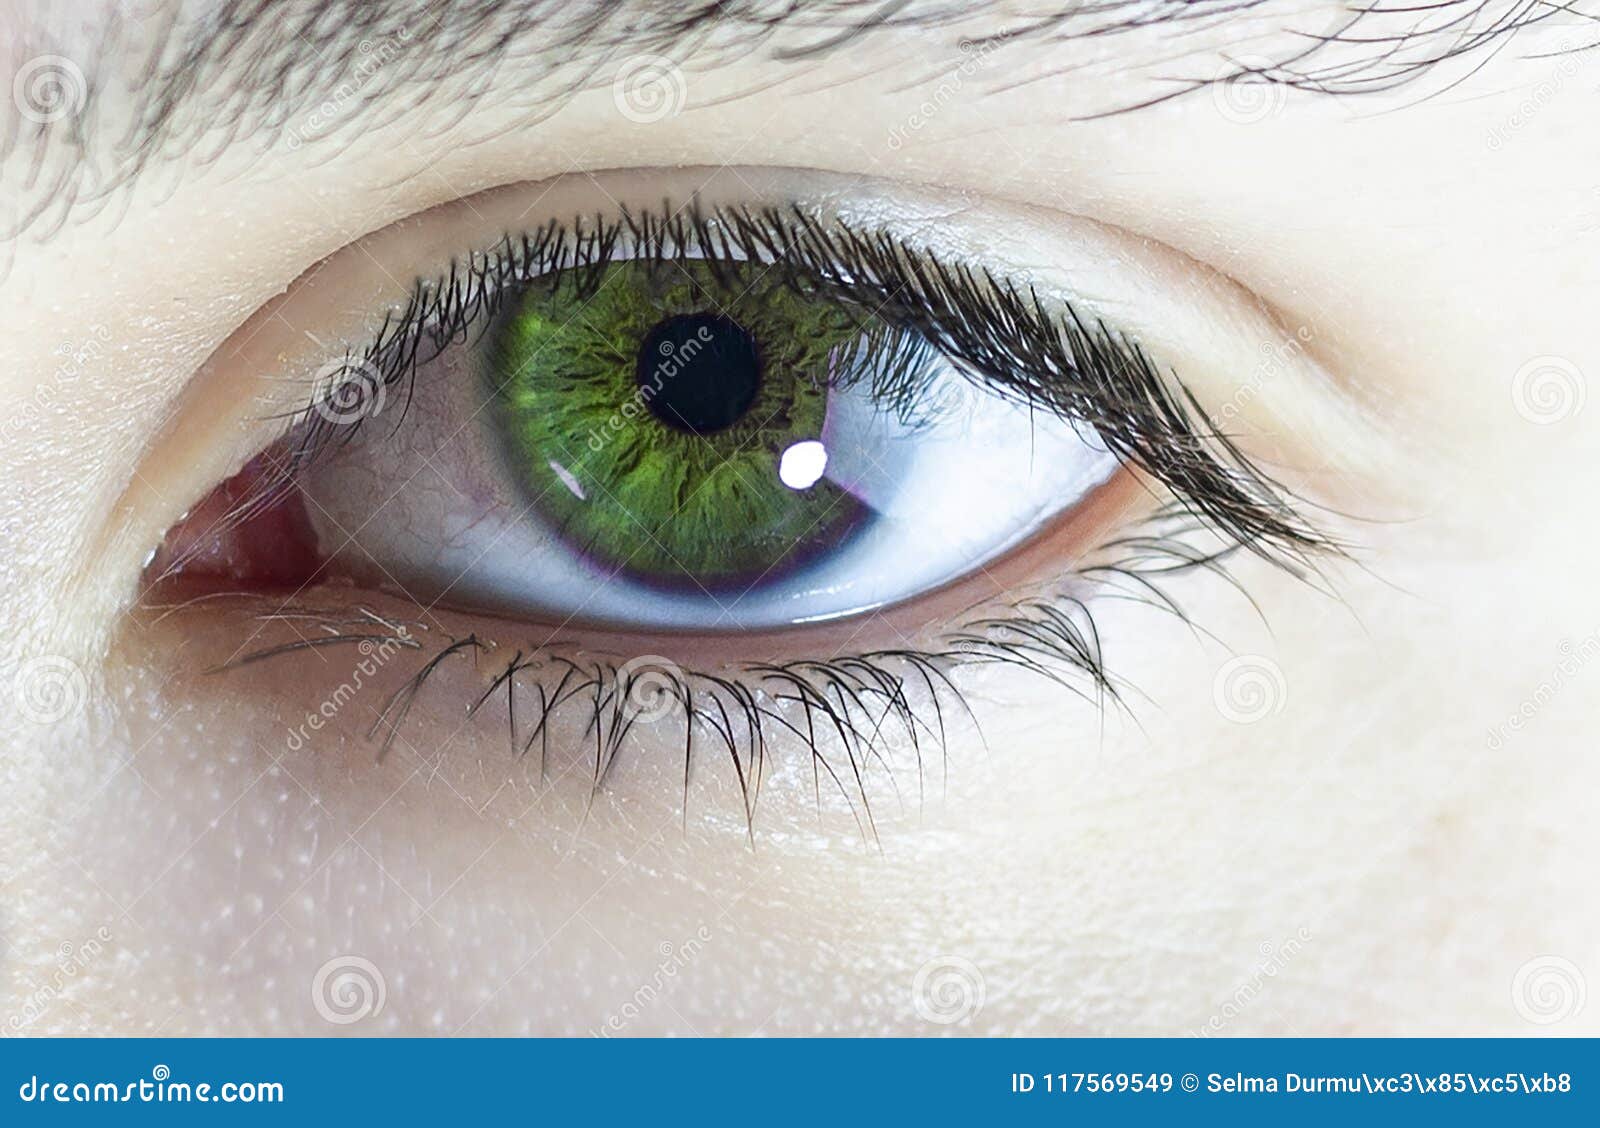 Ученые назвали самый редкий цвет глаз в мире